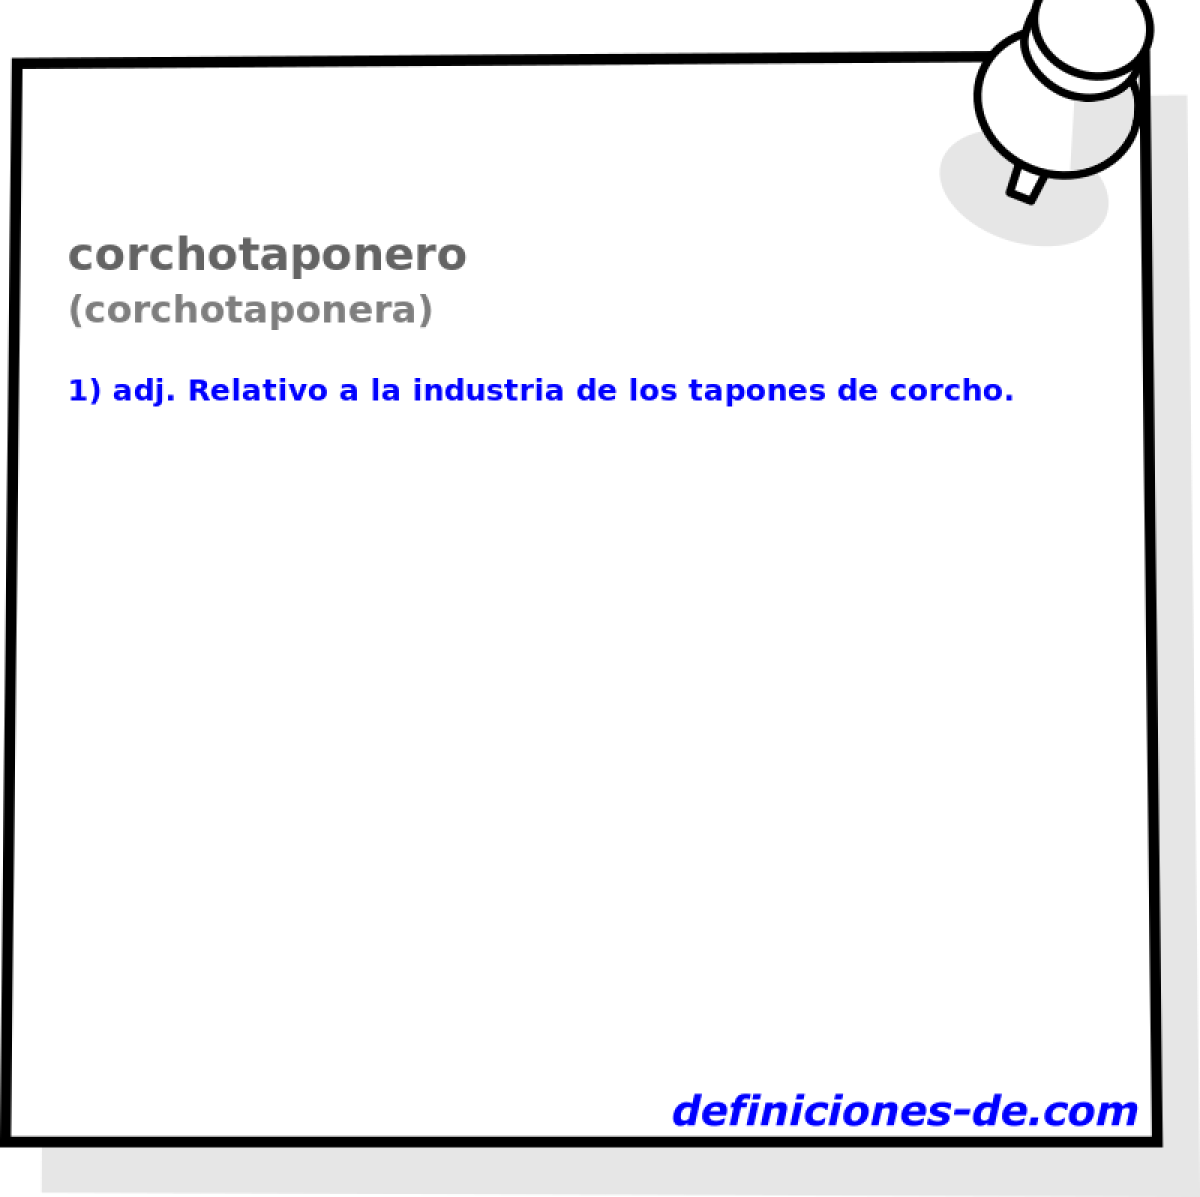 corchotaponero (corchotaponera)